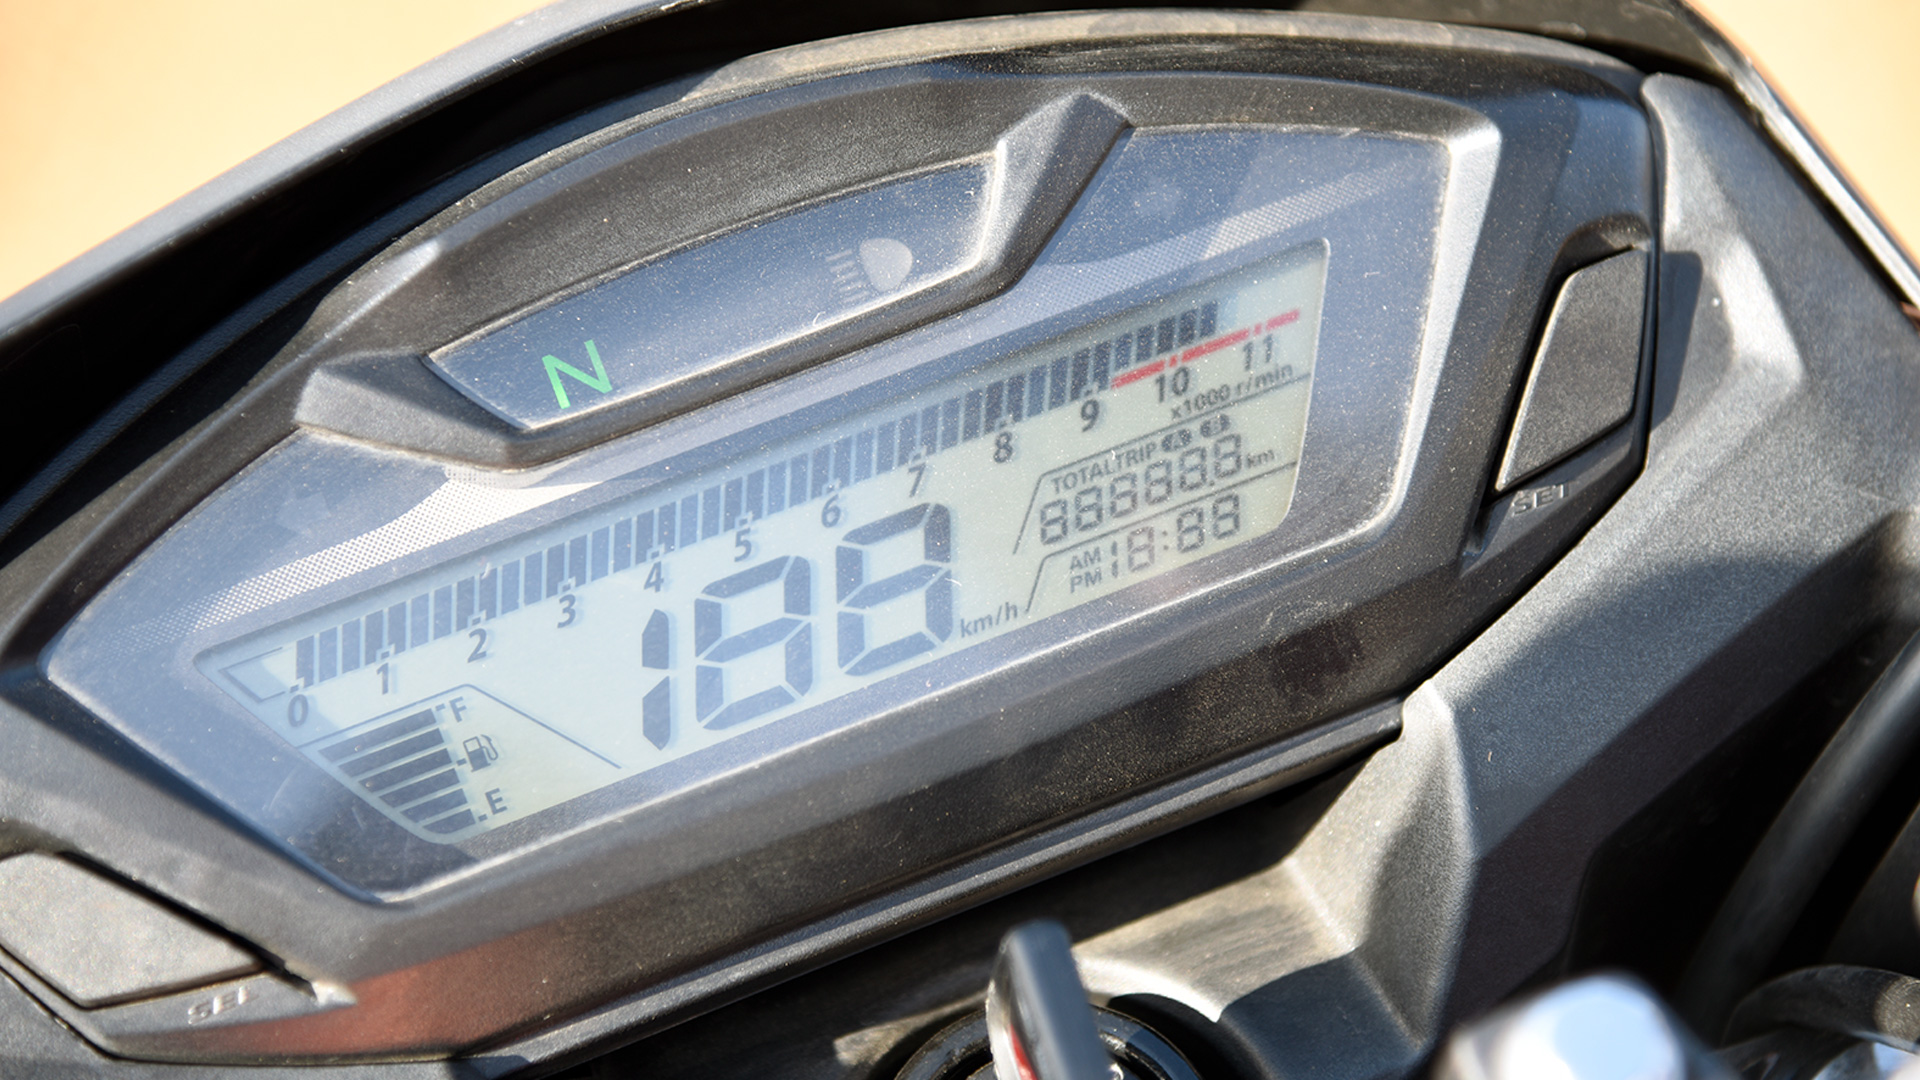 Honda CB Hornet 160R 2016 CBS Compare